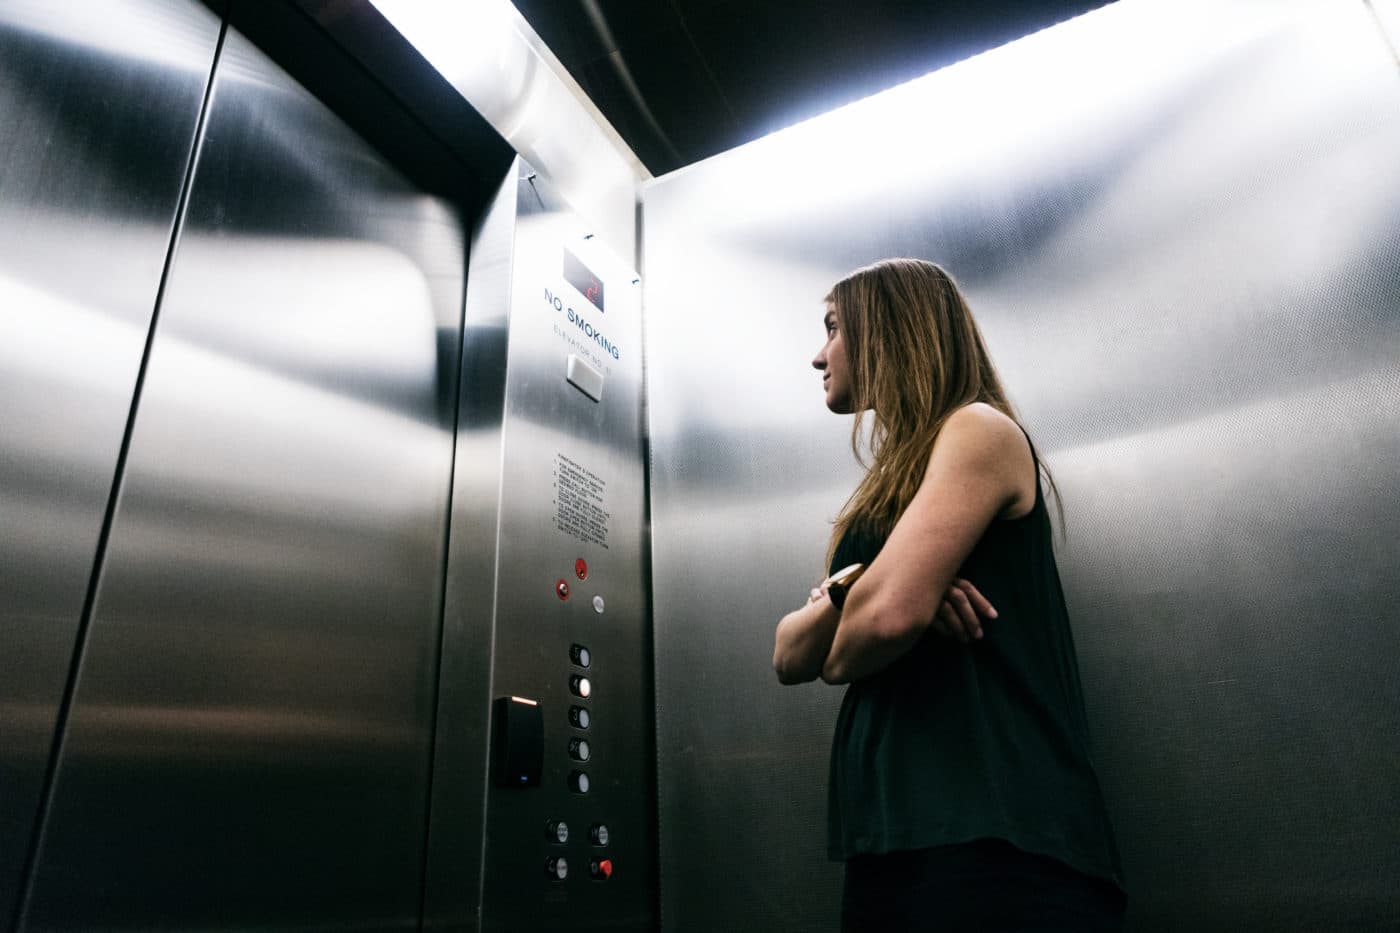 حفظ خونسردی هنگام گیر کردن در آسانسور